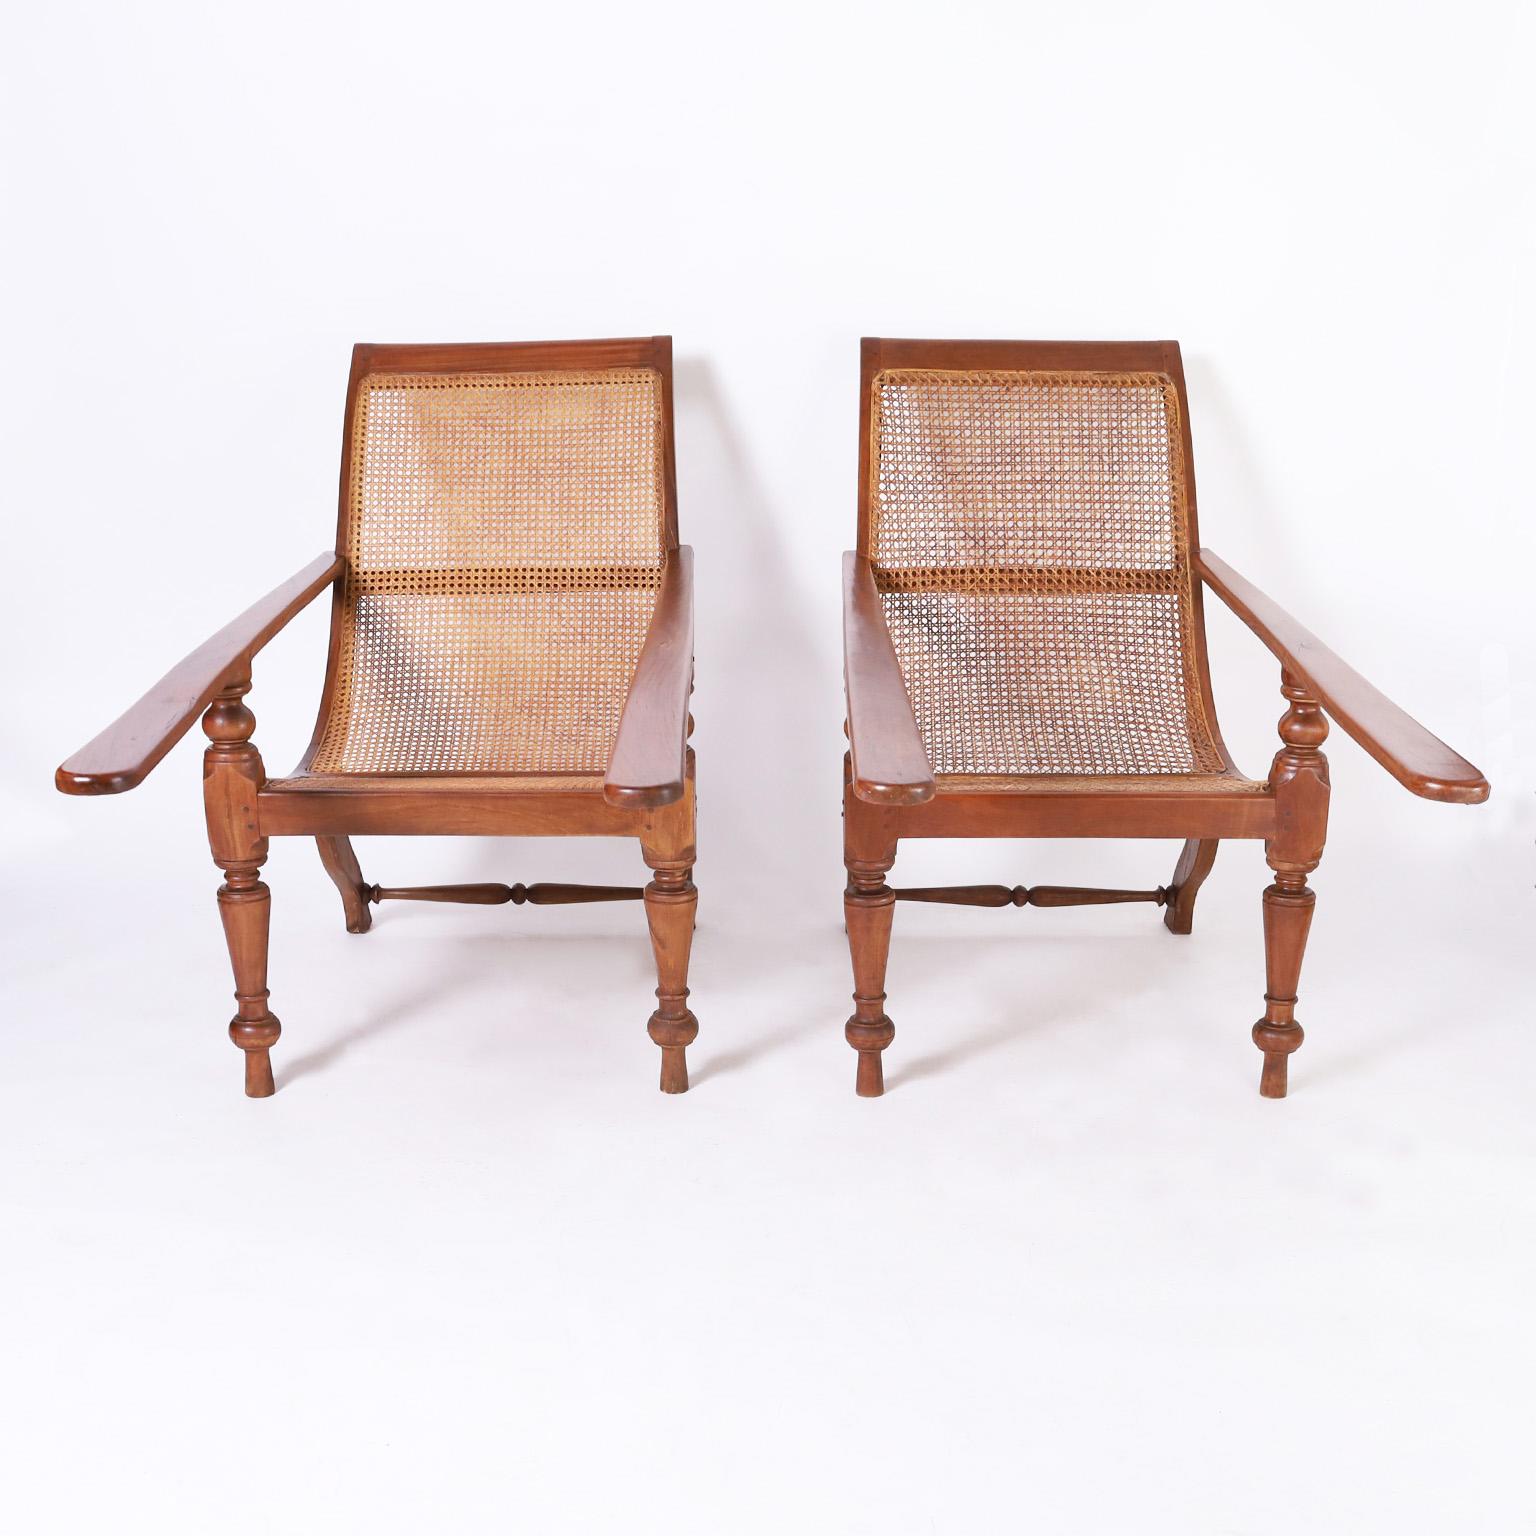 Intrigante paire de chaises de plantation de la colonie britannique du début du 20e siècle, fabriquées à la main en acajou indigène, avec une forme élégante comprenant des dossiers et des sièges cannelés, une construction chevillée, des planches de